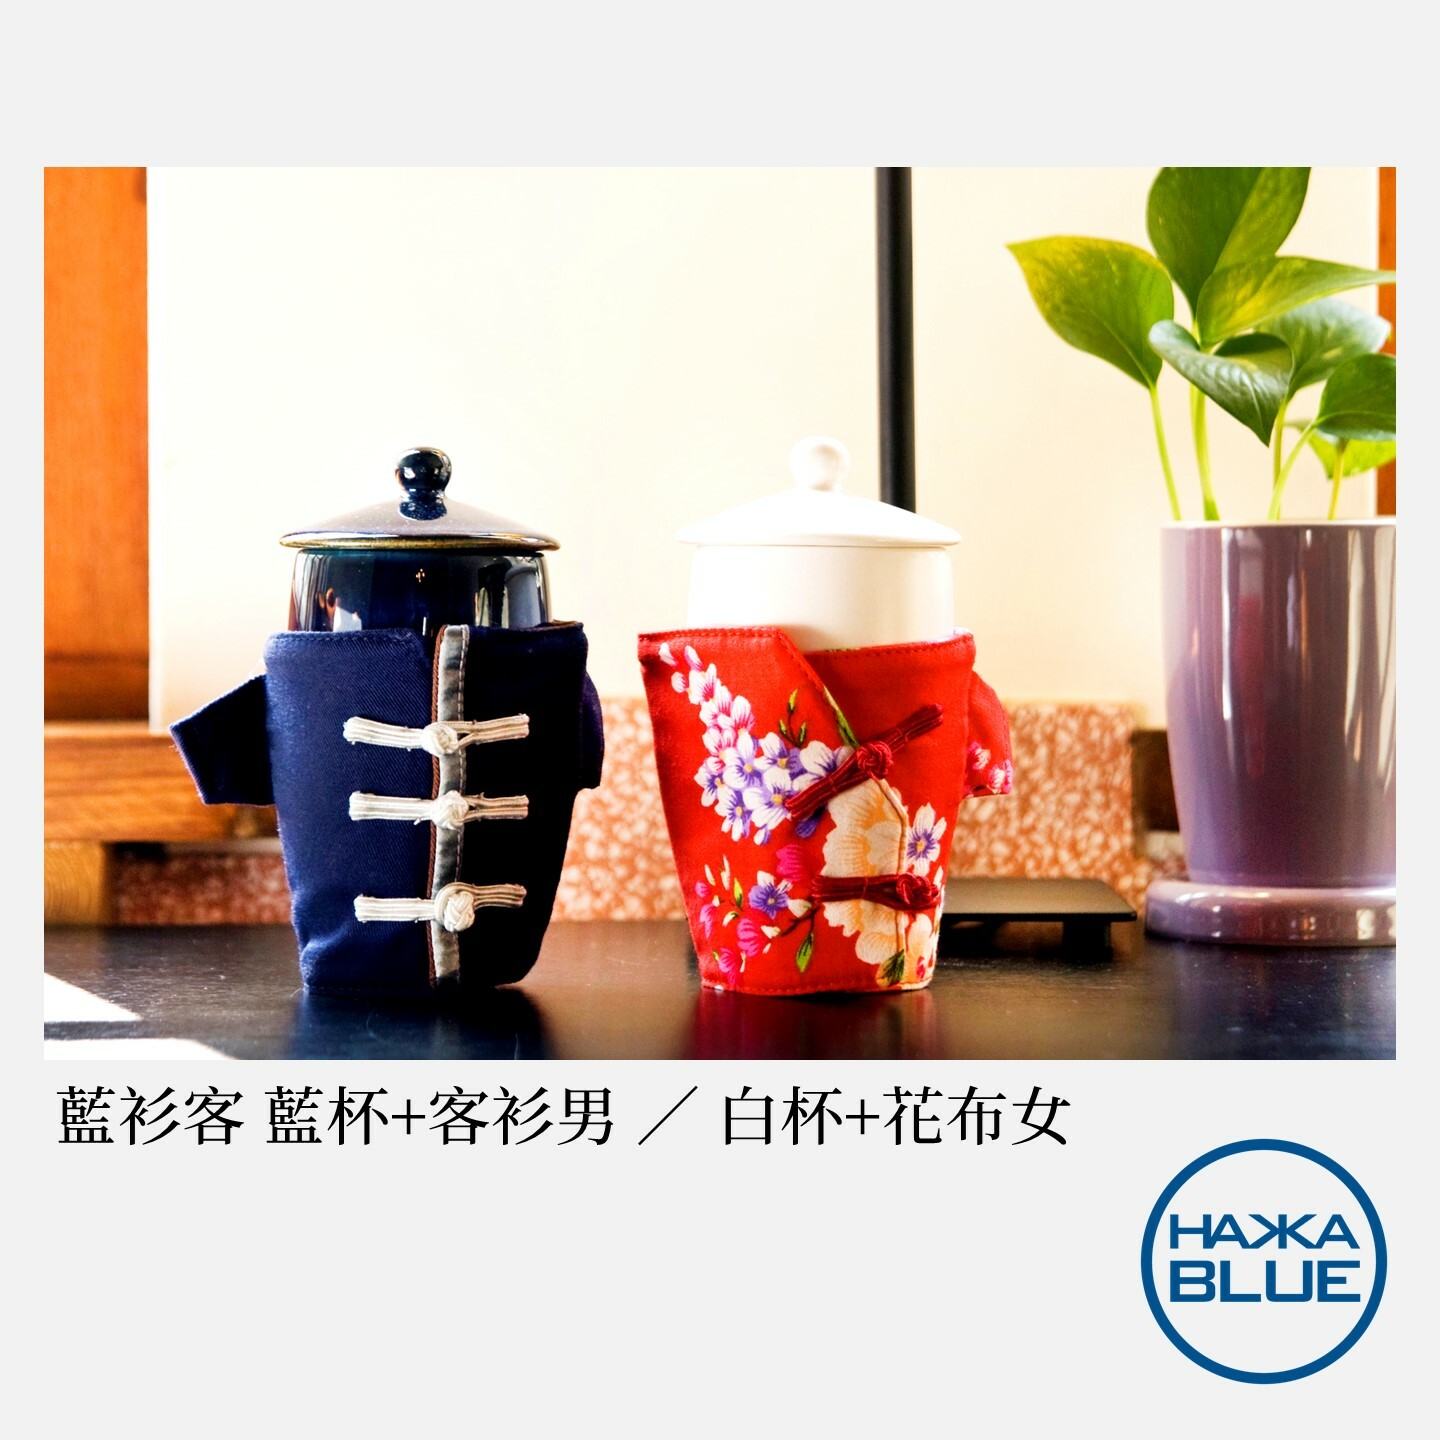 小籠包調味罐二入組(蒸籠+花布) – HAKKA-BLUE 台客藍